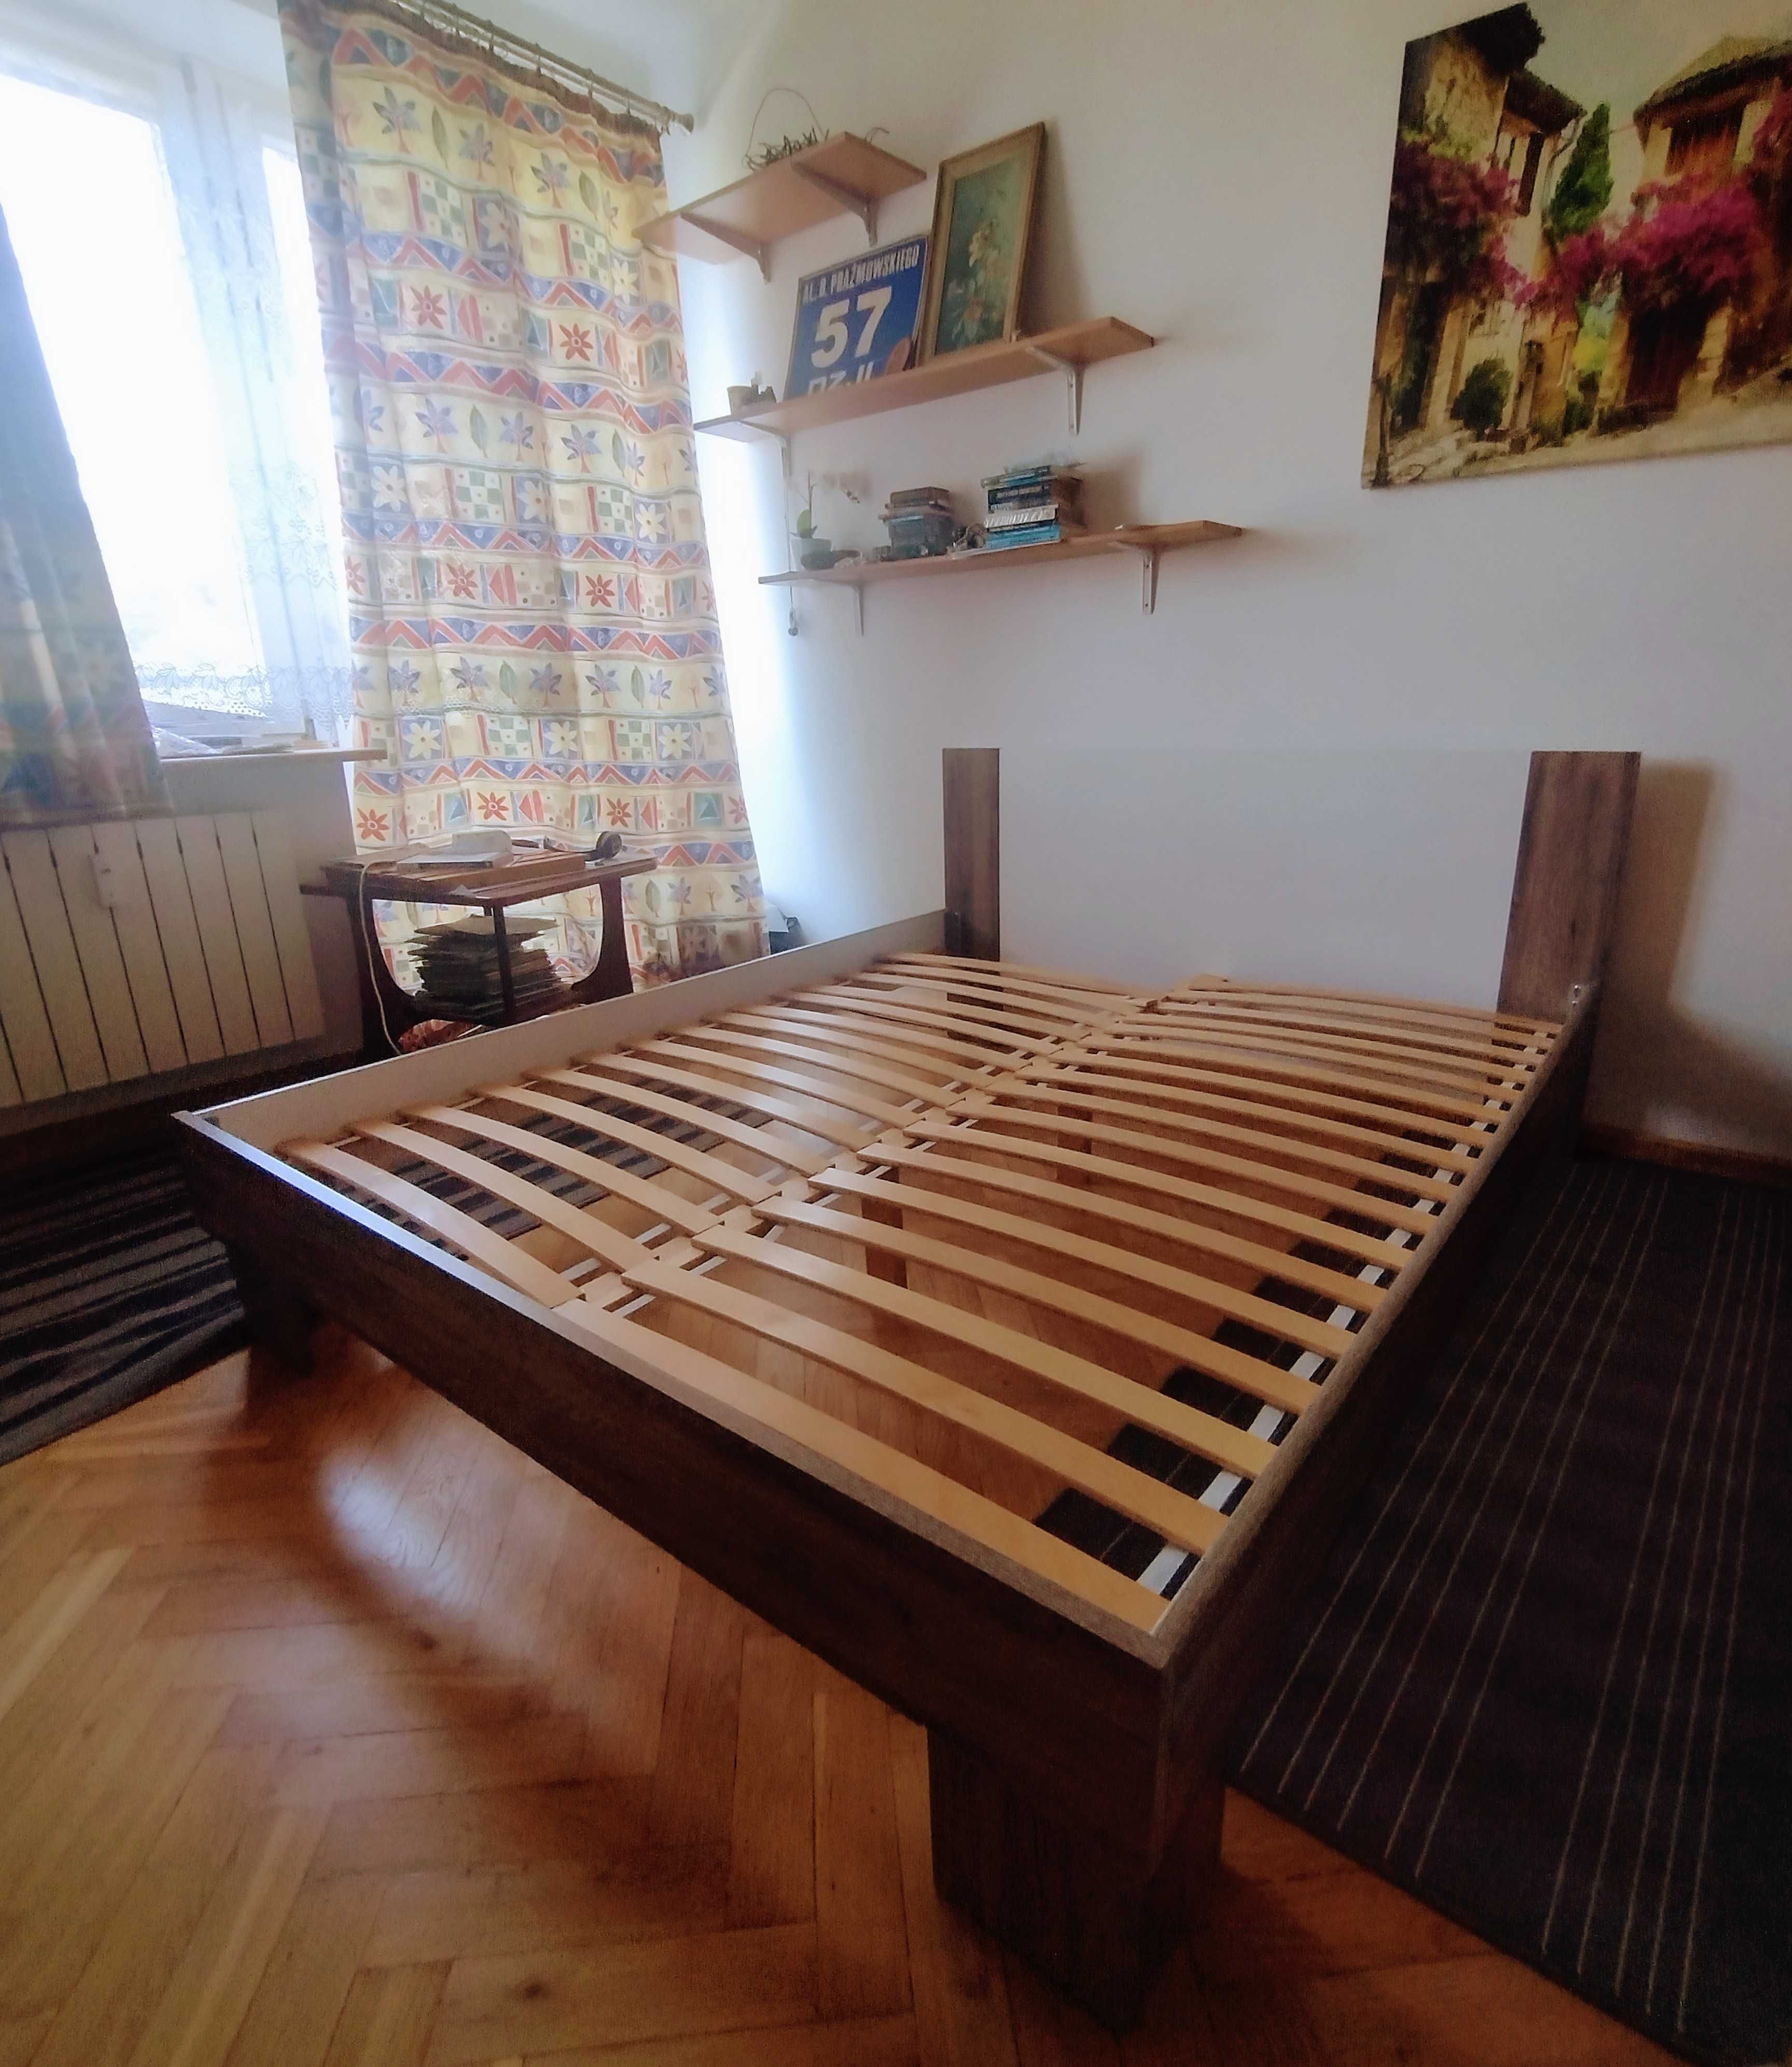 Łóżko drewniane 160x200